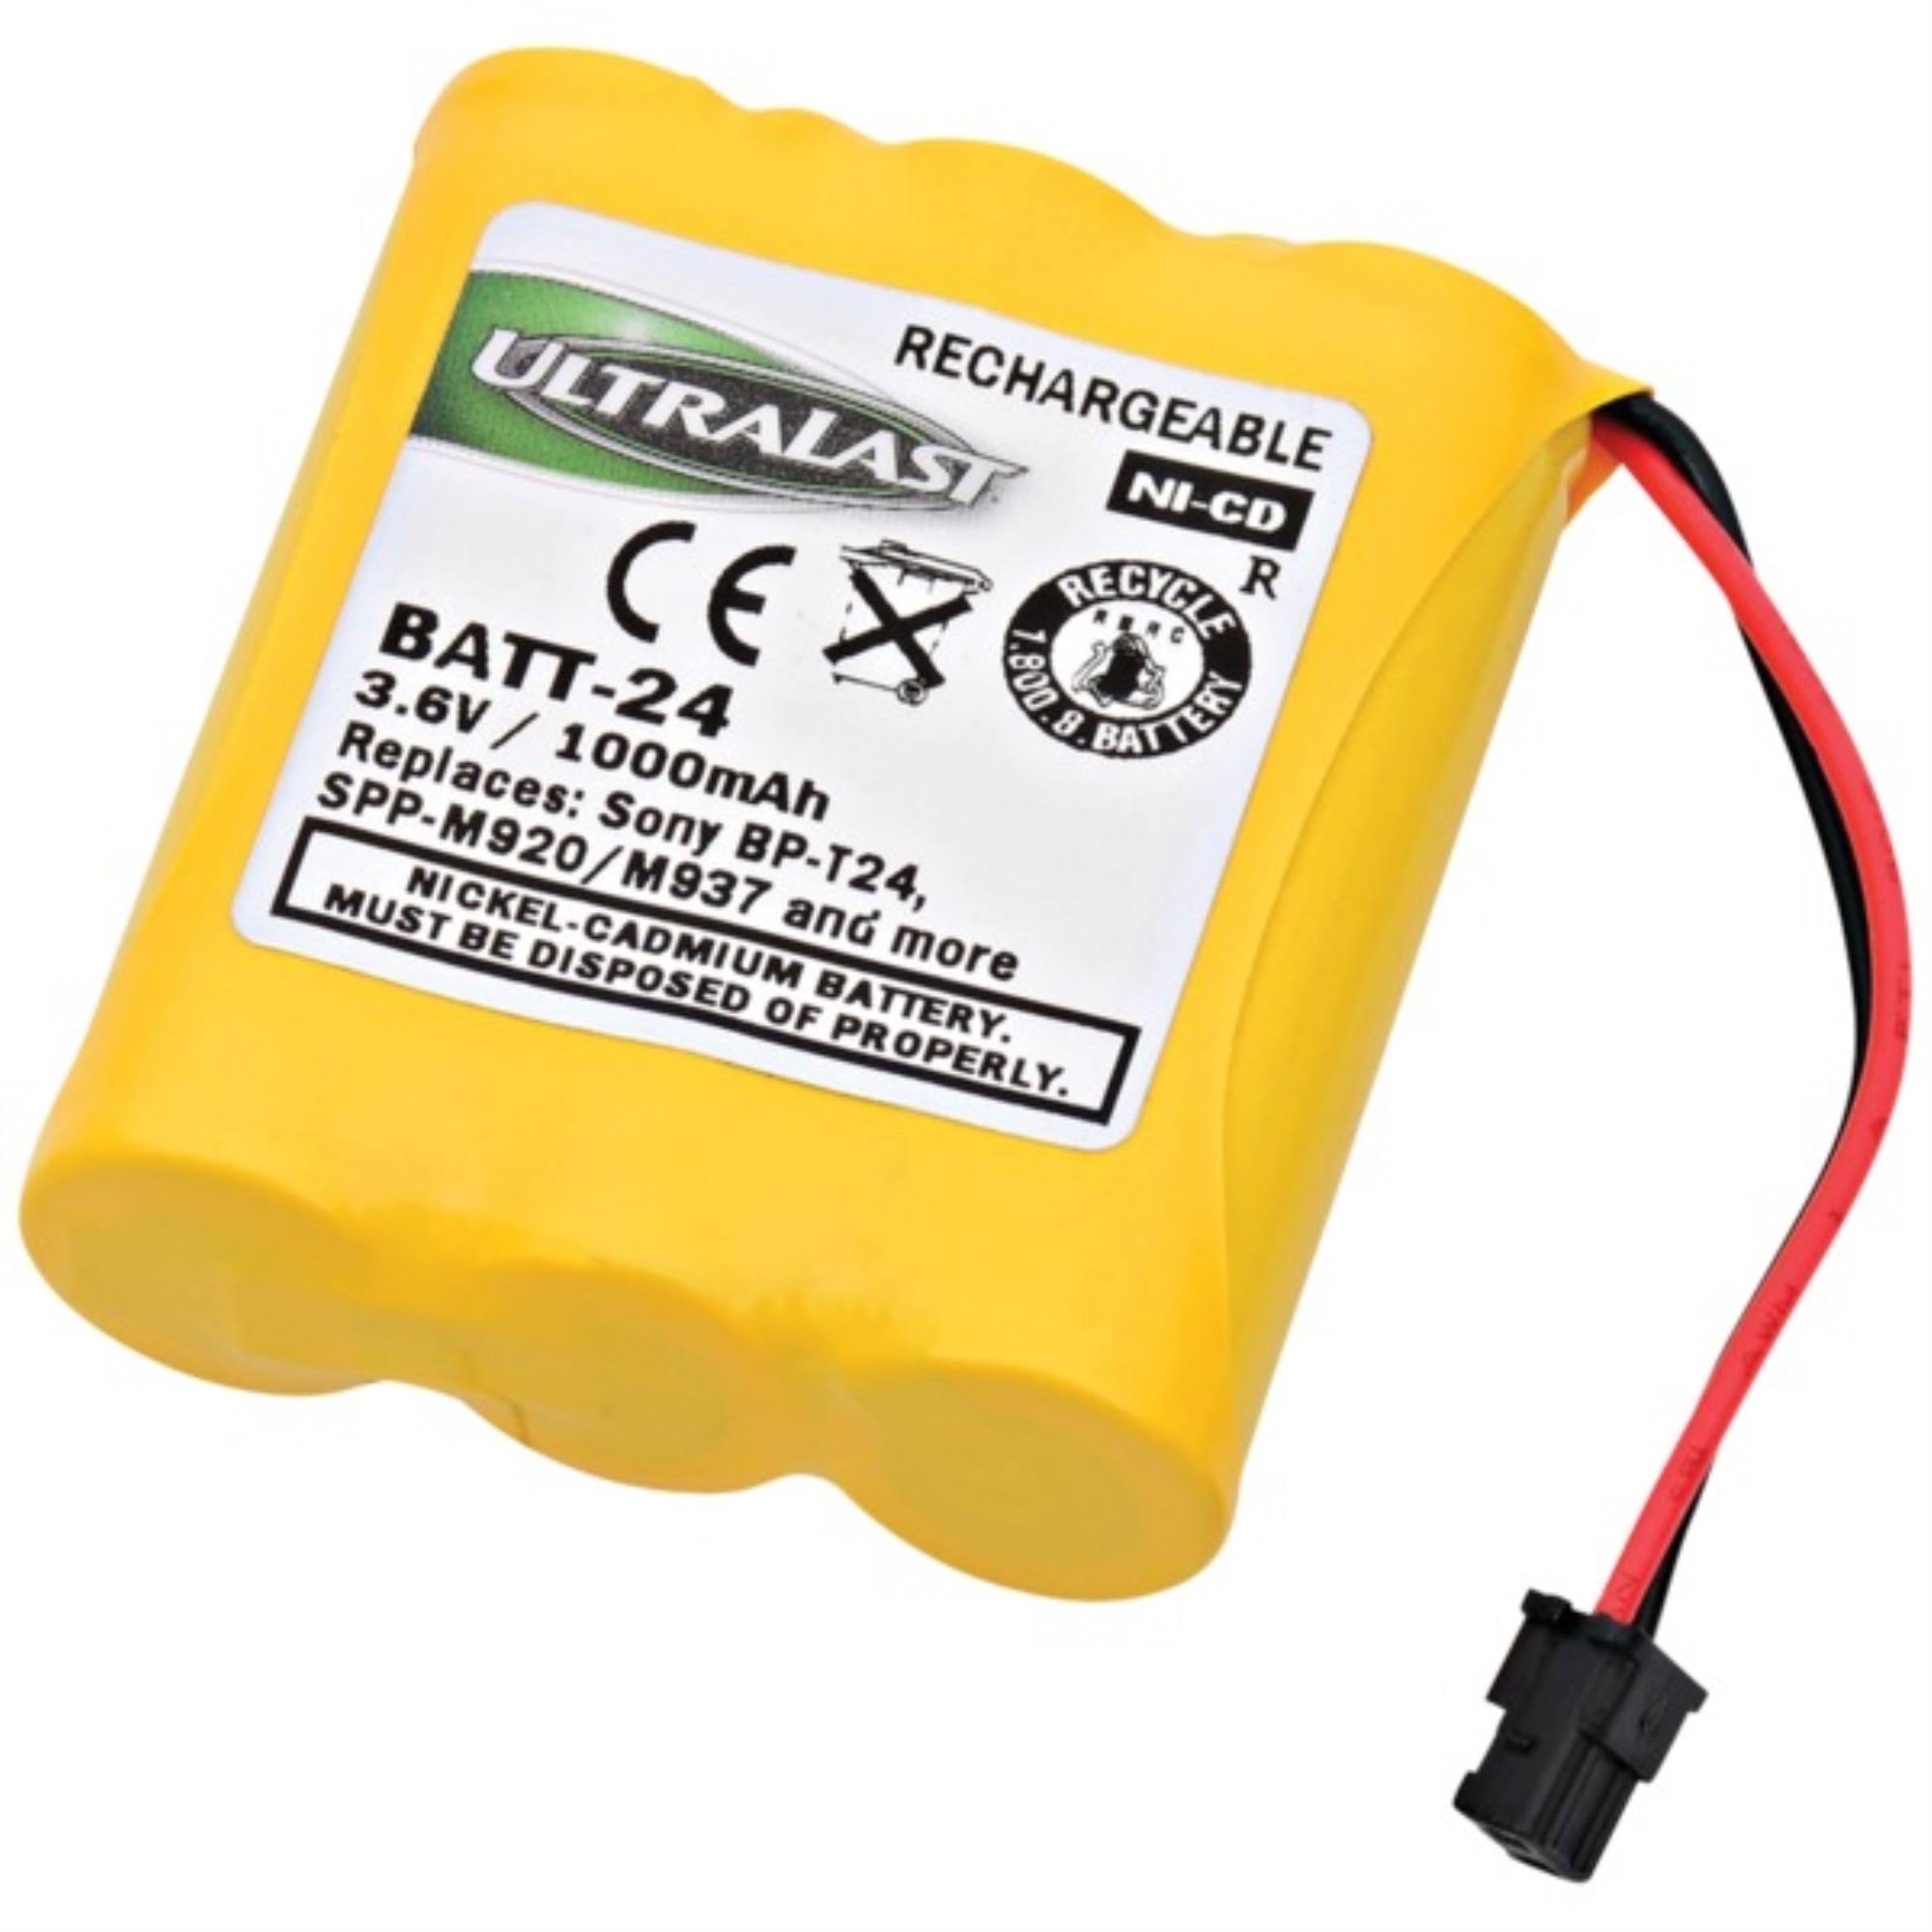 Ultralast BATT-24 Rechargeable Replacement Battery